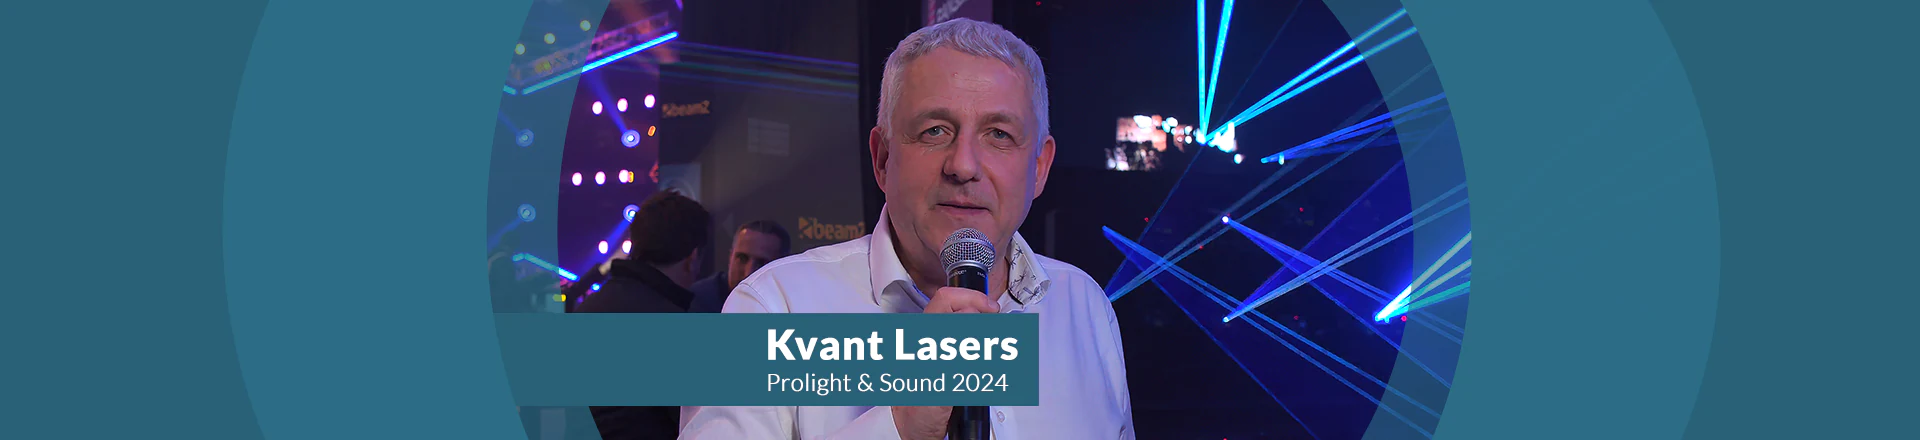 Kvant Lasers na PL+S 2024 - urządzenia laserowe rodem ze Słowacji